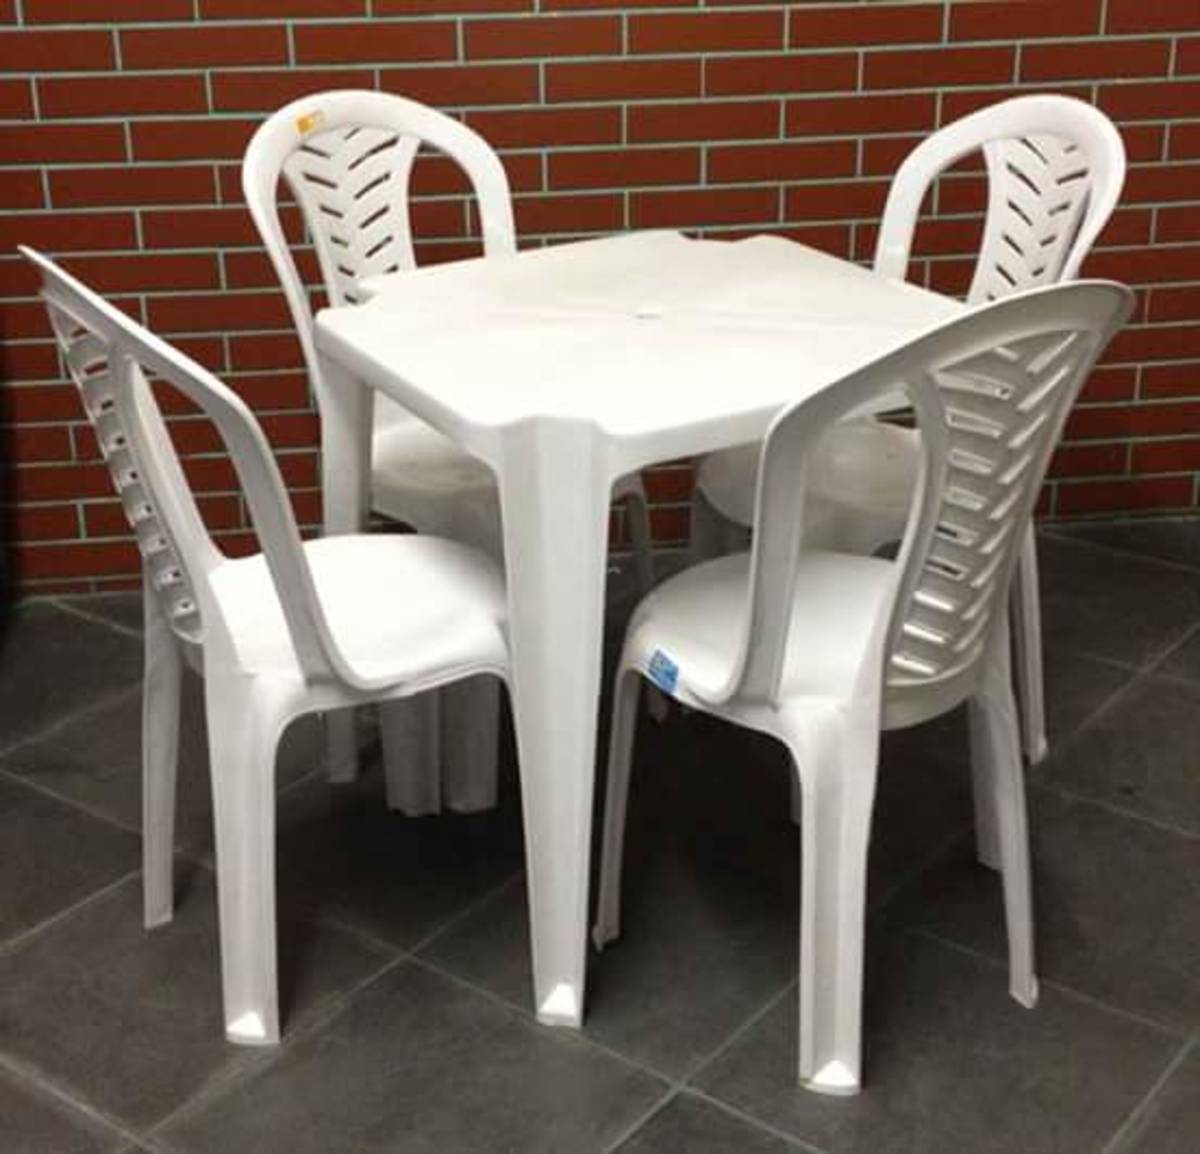 Reverse Enroll lend Mesa E Cadeira De Plástico Direto Da Fabrica - Pallets de Madeira